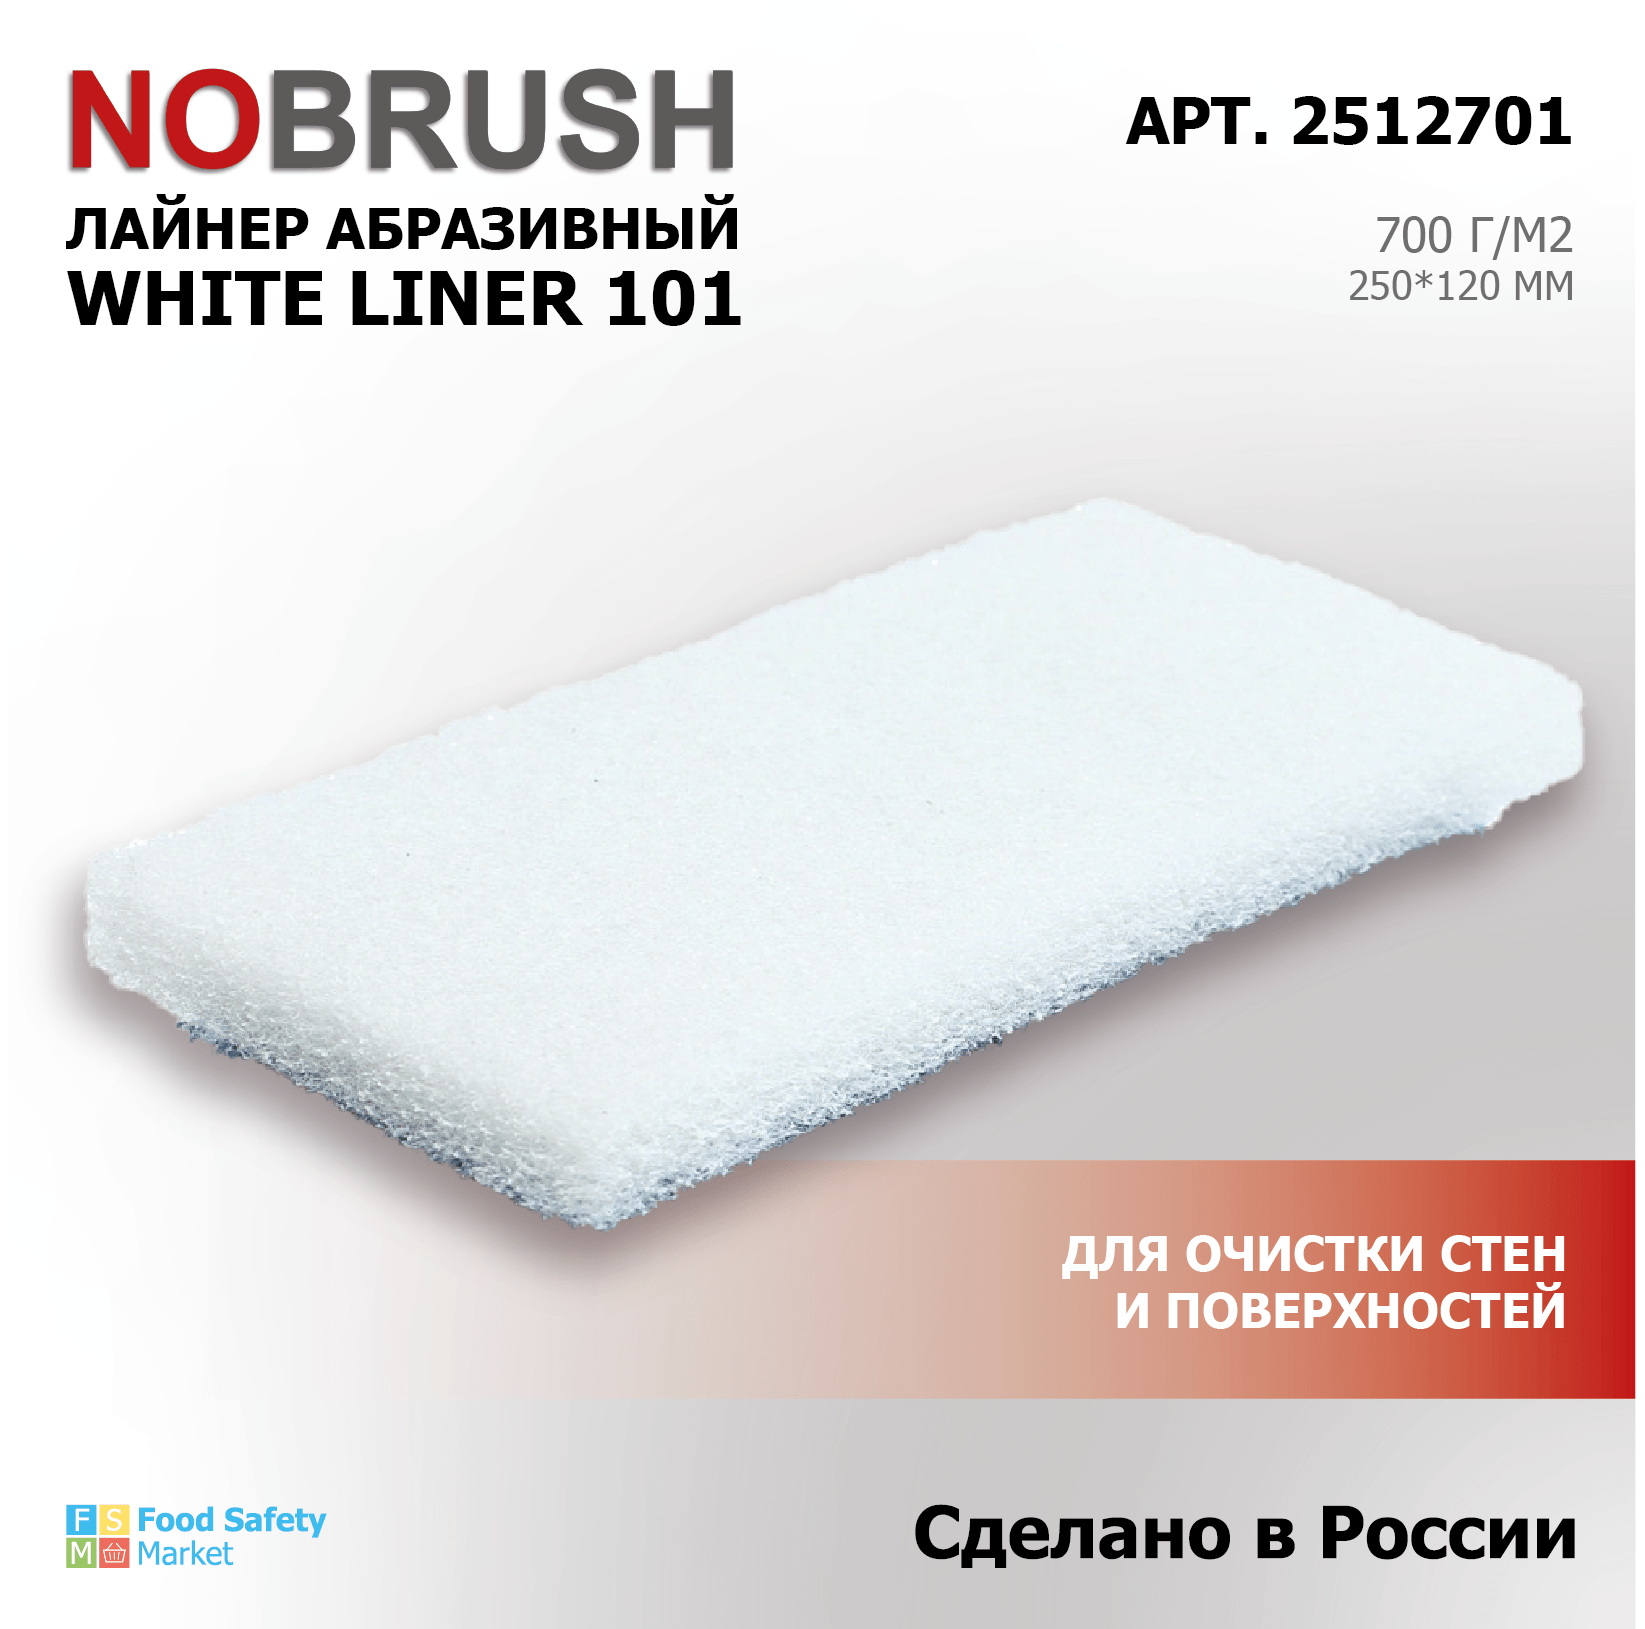 Лайнер абразивный (пад) HACCPER NOBRUSH White liner 101 для очистки стен и поверхностей, 250*120 мм